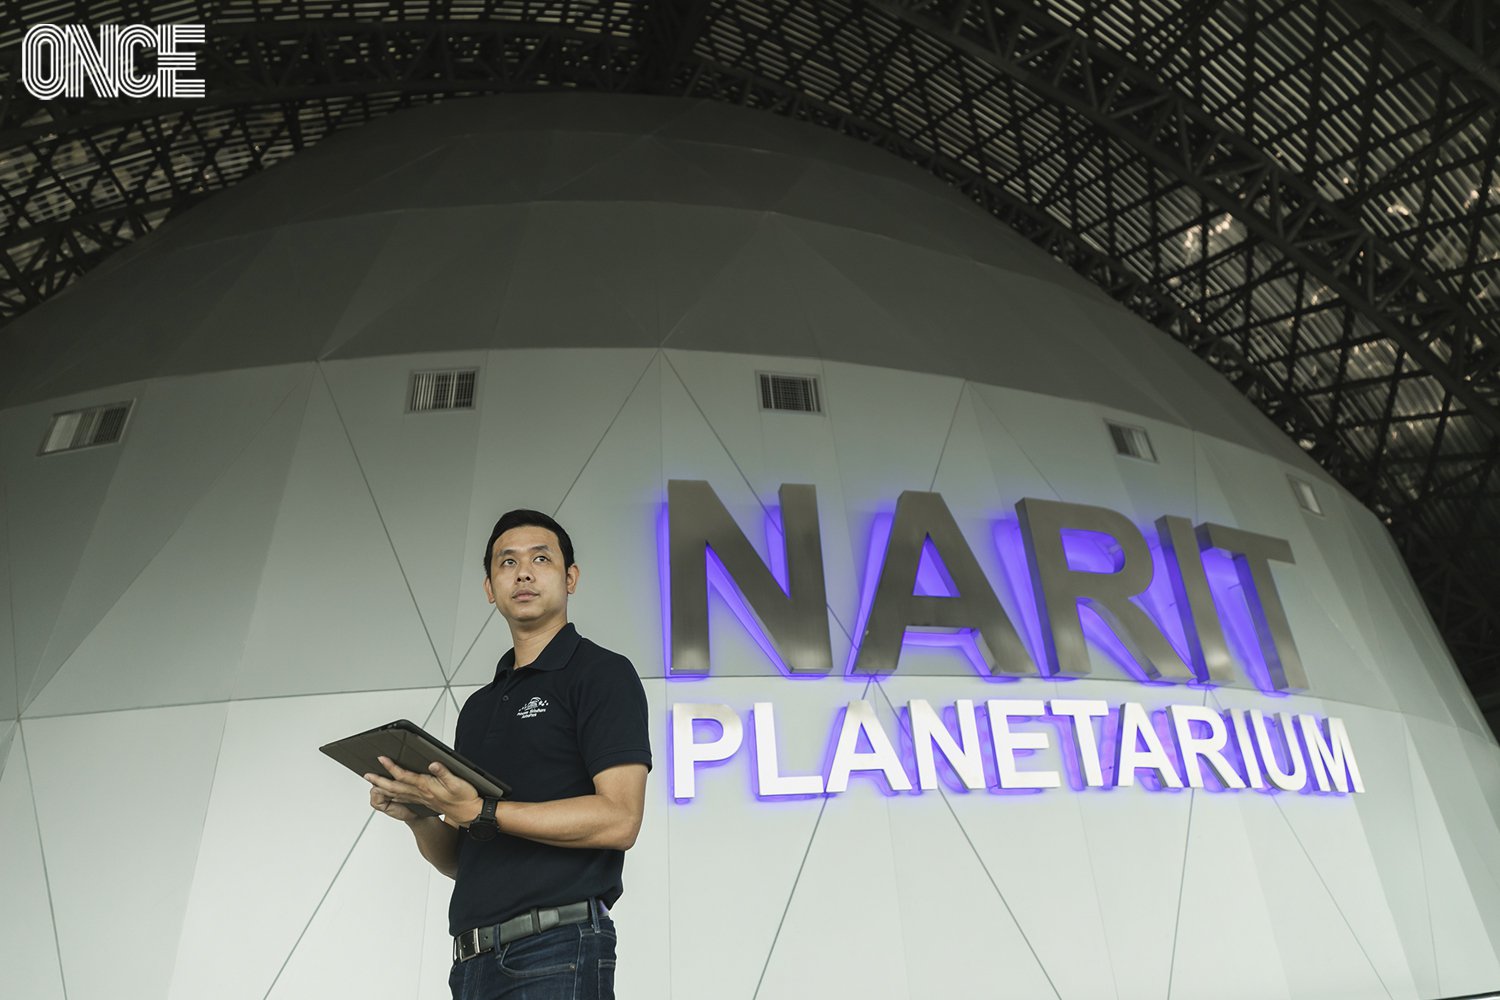 เที่ยวไทยใน Dark Sky in Thailand ผ่านมุมมอง NARIT สถาบันวิจัยดาราศาสตร์แห่งชาติ